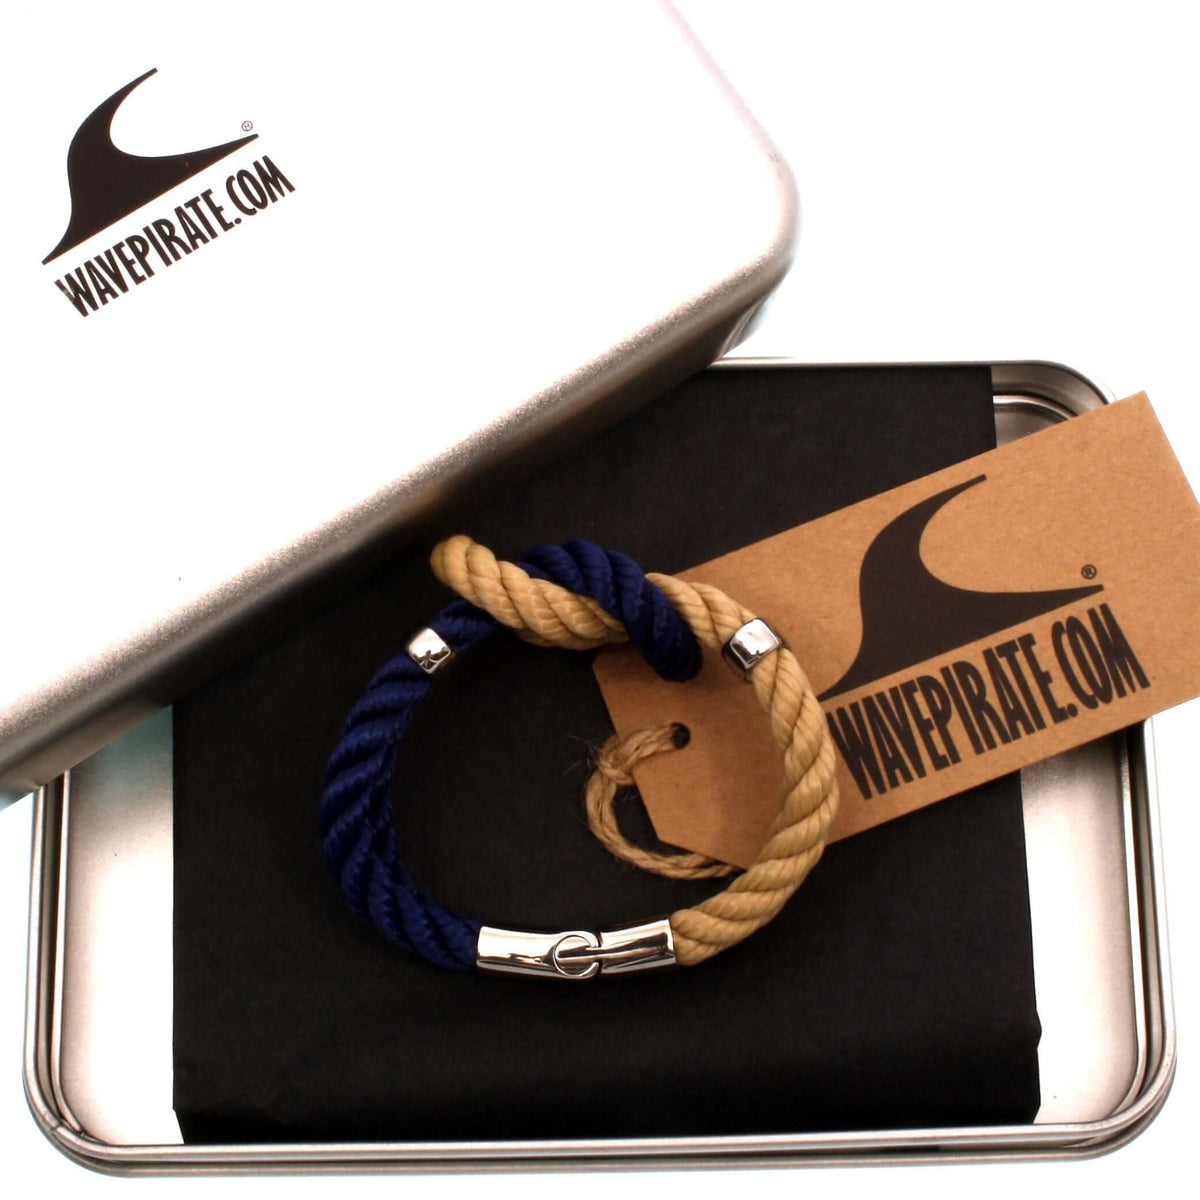 Damen-Segeltau-armband-pure-blau-natur-beige-silber-kordel-geflochten-Edelstahlverschluss-geschenkverpackung-wavepirate-shop-k